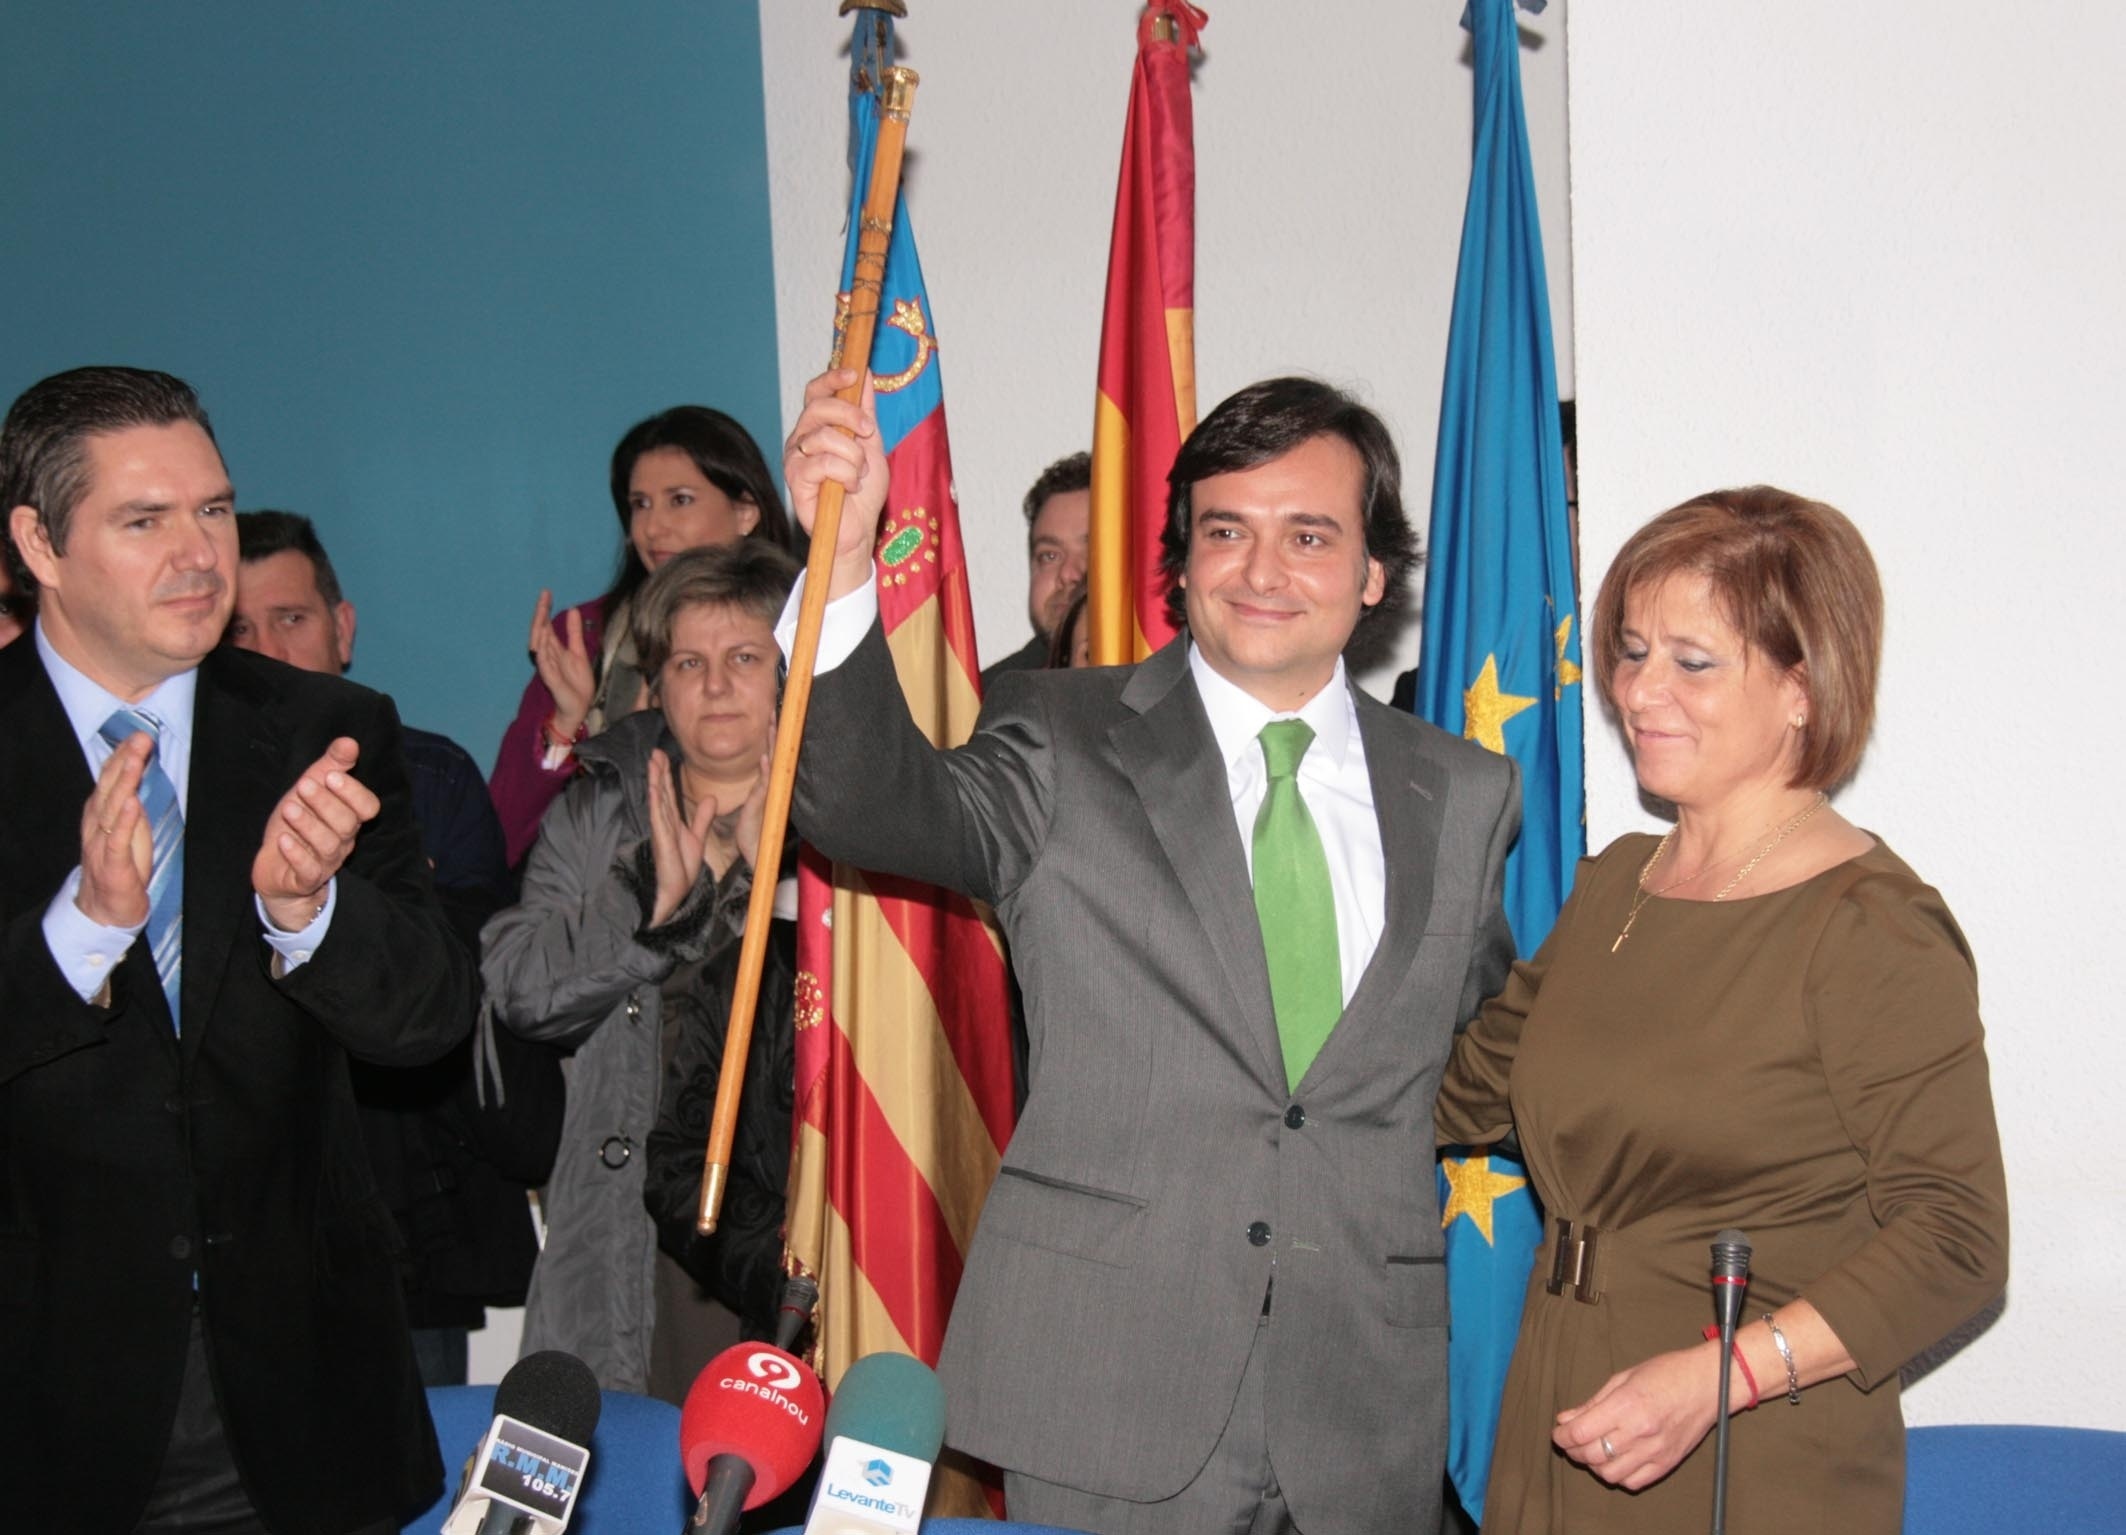 Francisco Izquierdo, proclamado alcalde de Manises (Valencia), expresa su voluntad de lograr consensos